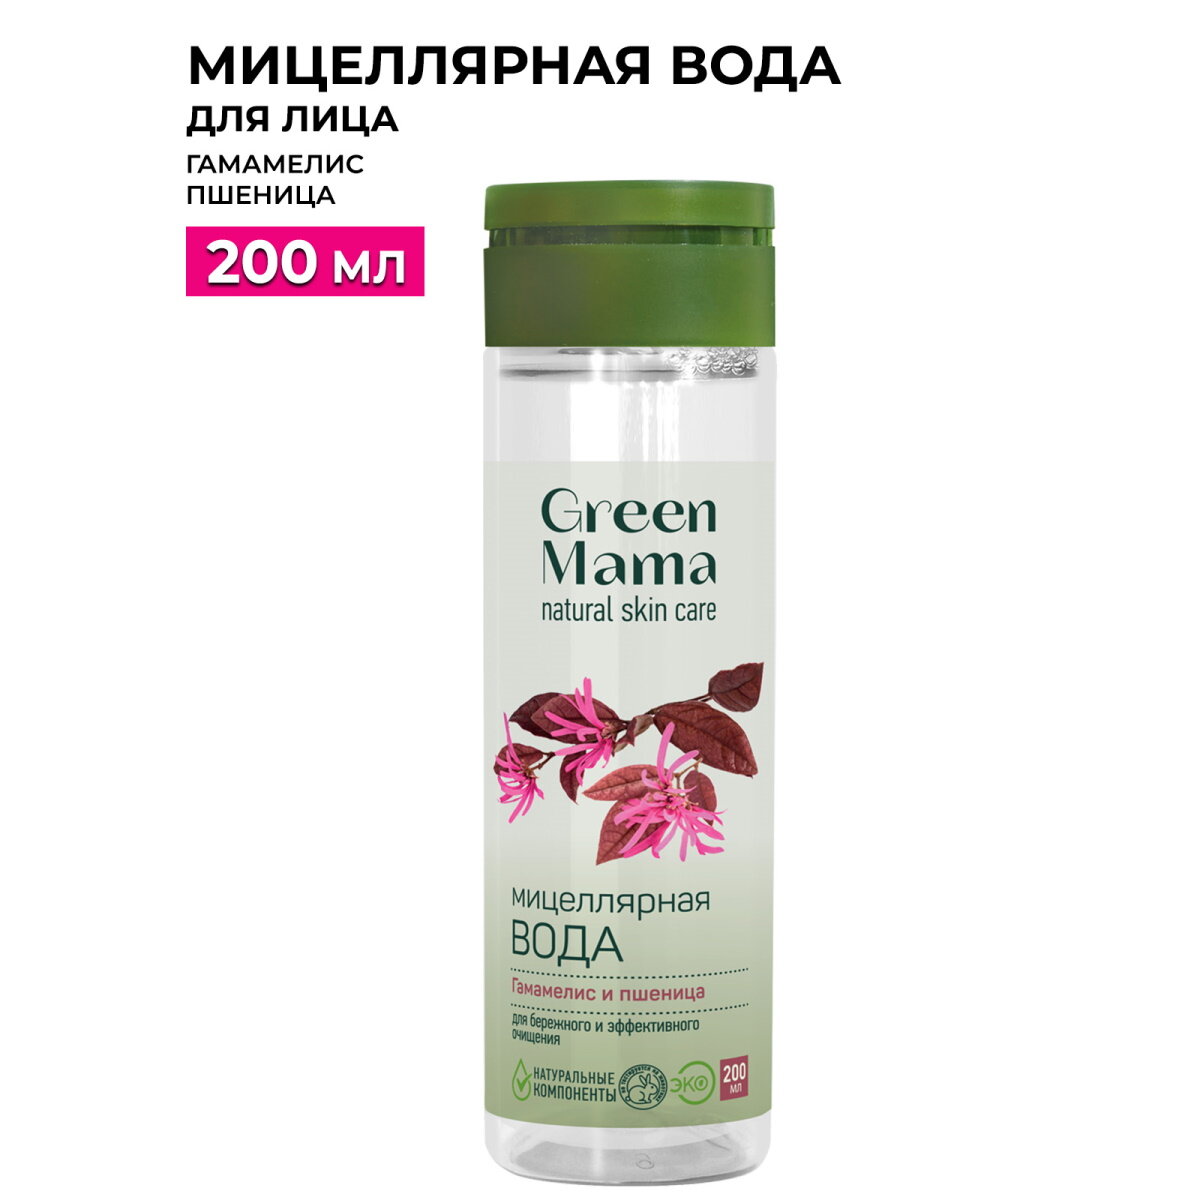 Мицеллярная вода для лица GREEN MAMA гамамелис и пшеница 200 мл